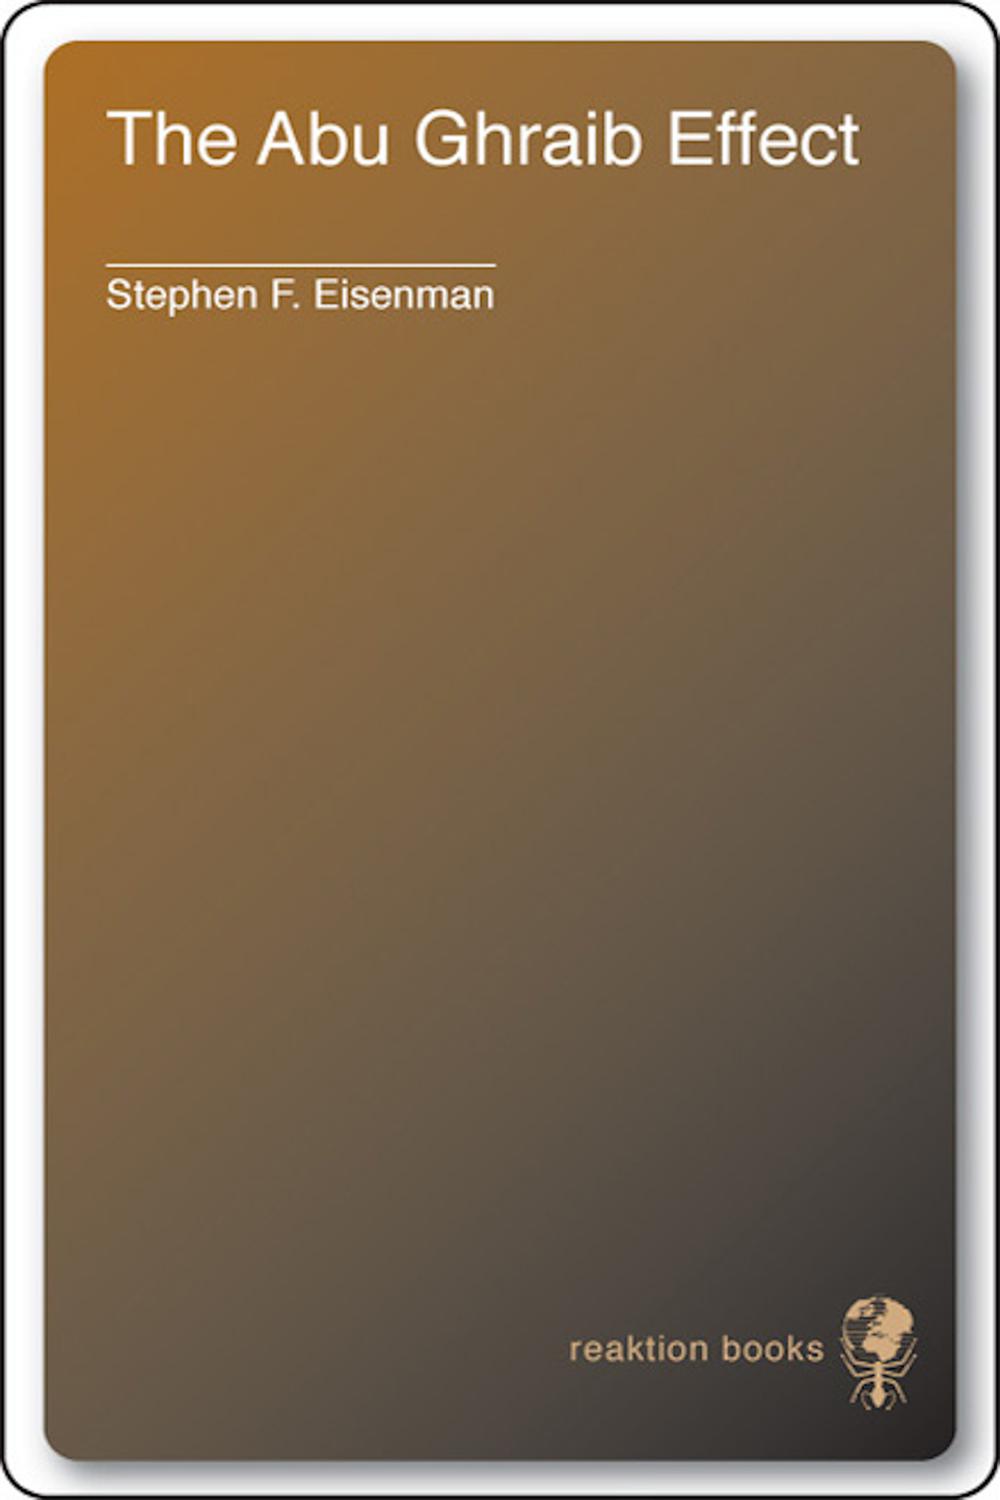 The Abu Ghraib Effect - Stephen F. Eisenman